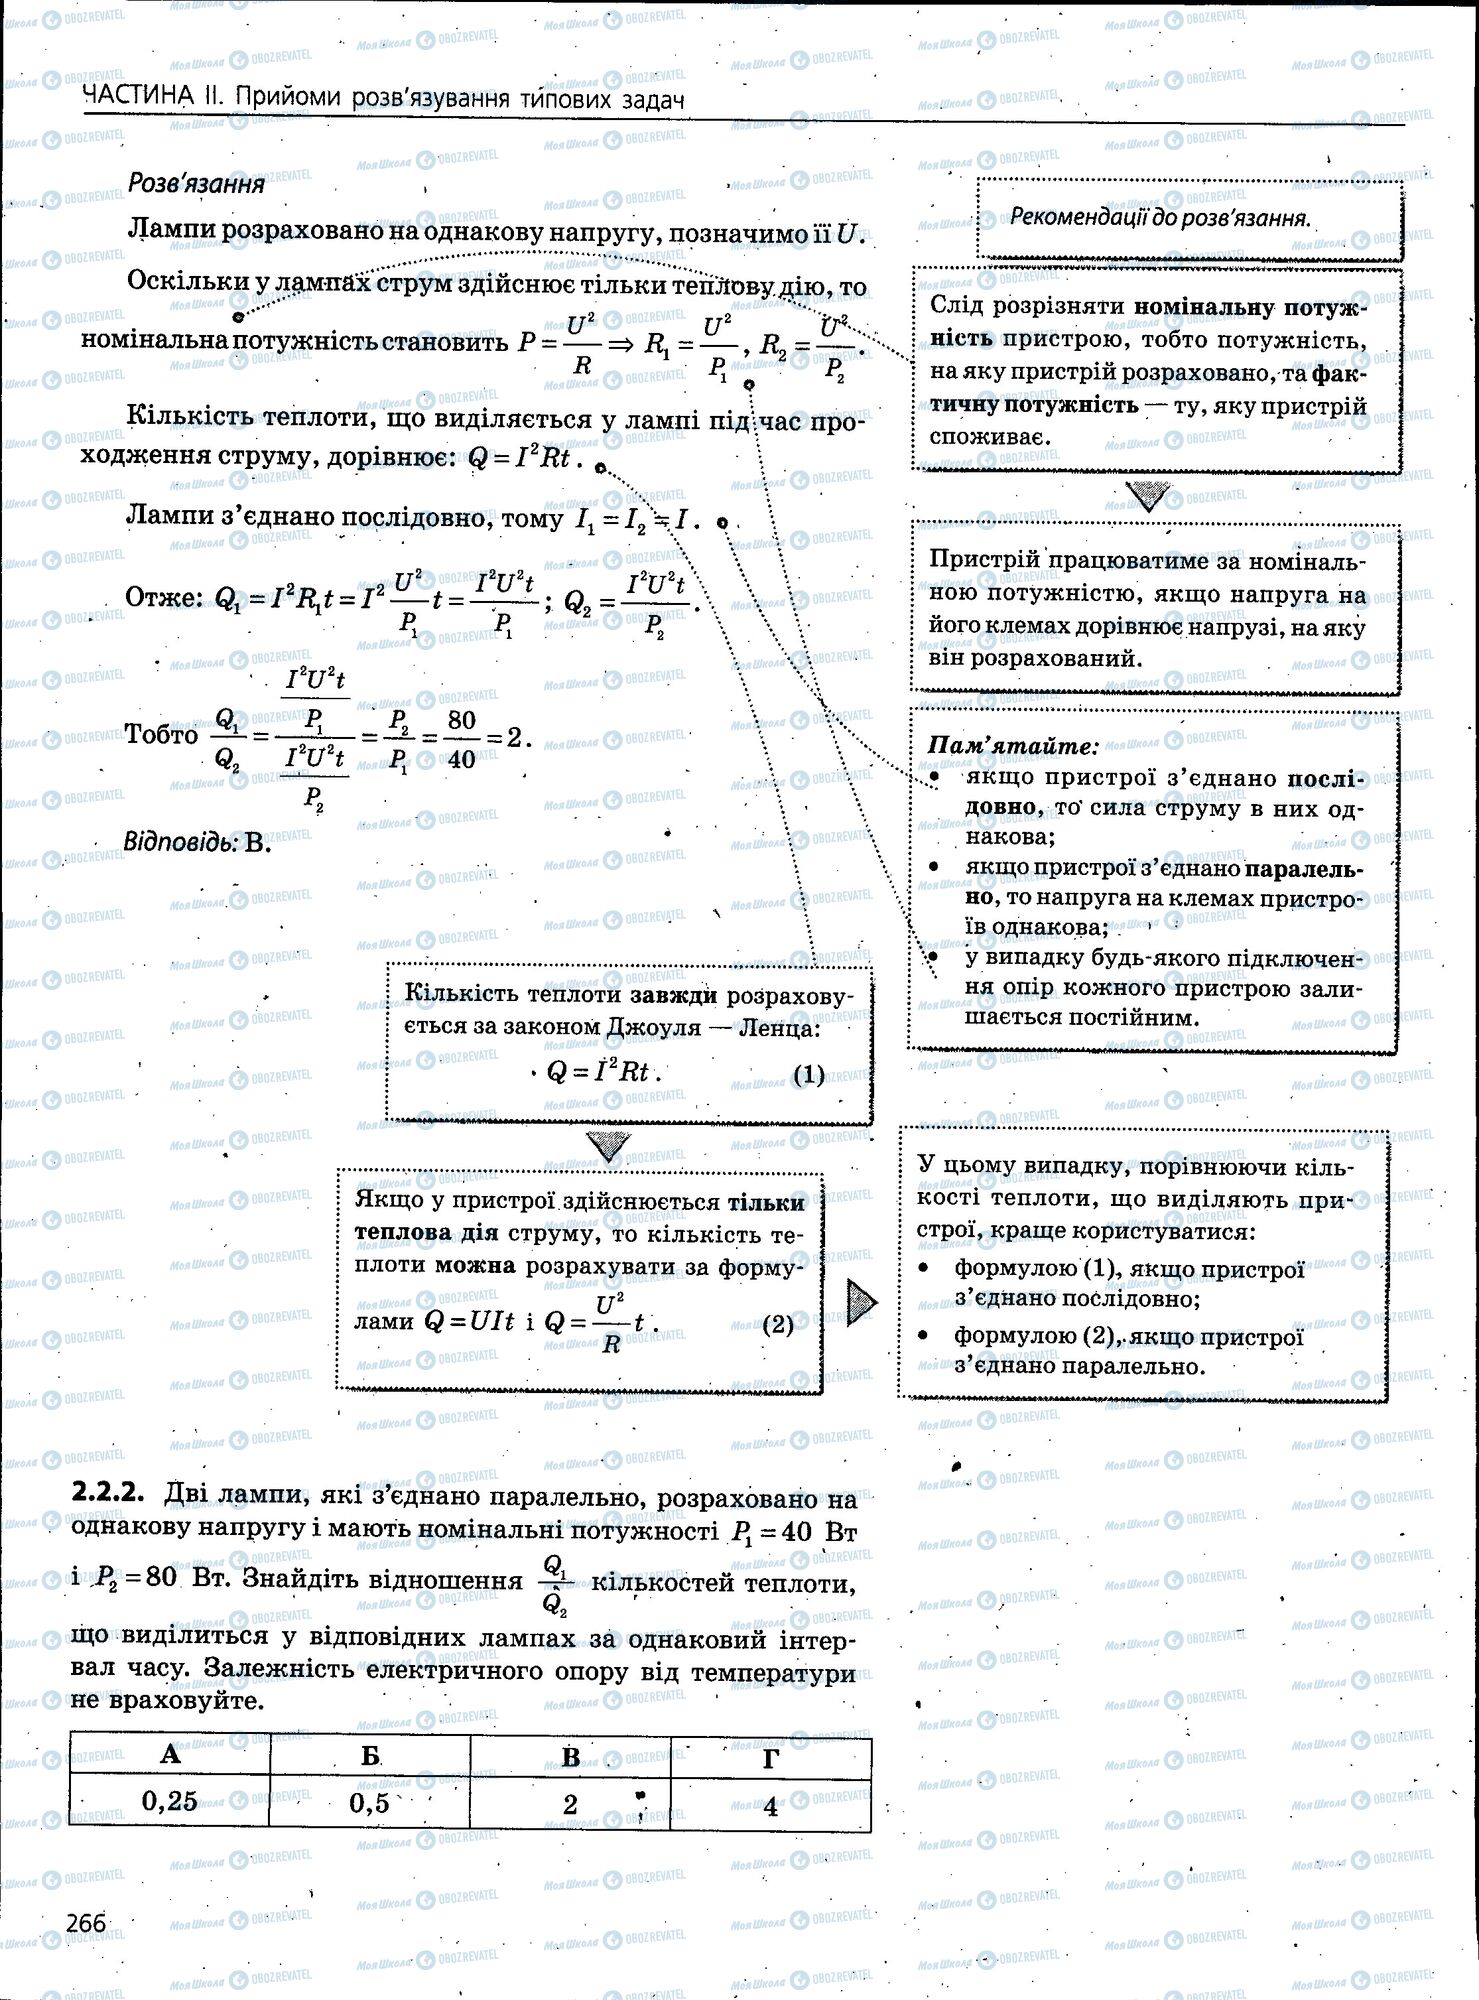 ЗНО Физика 11 класс страница 266